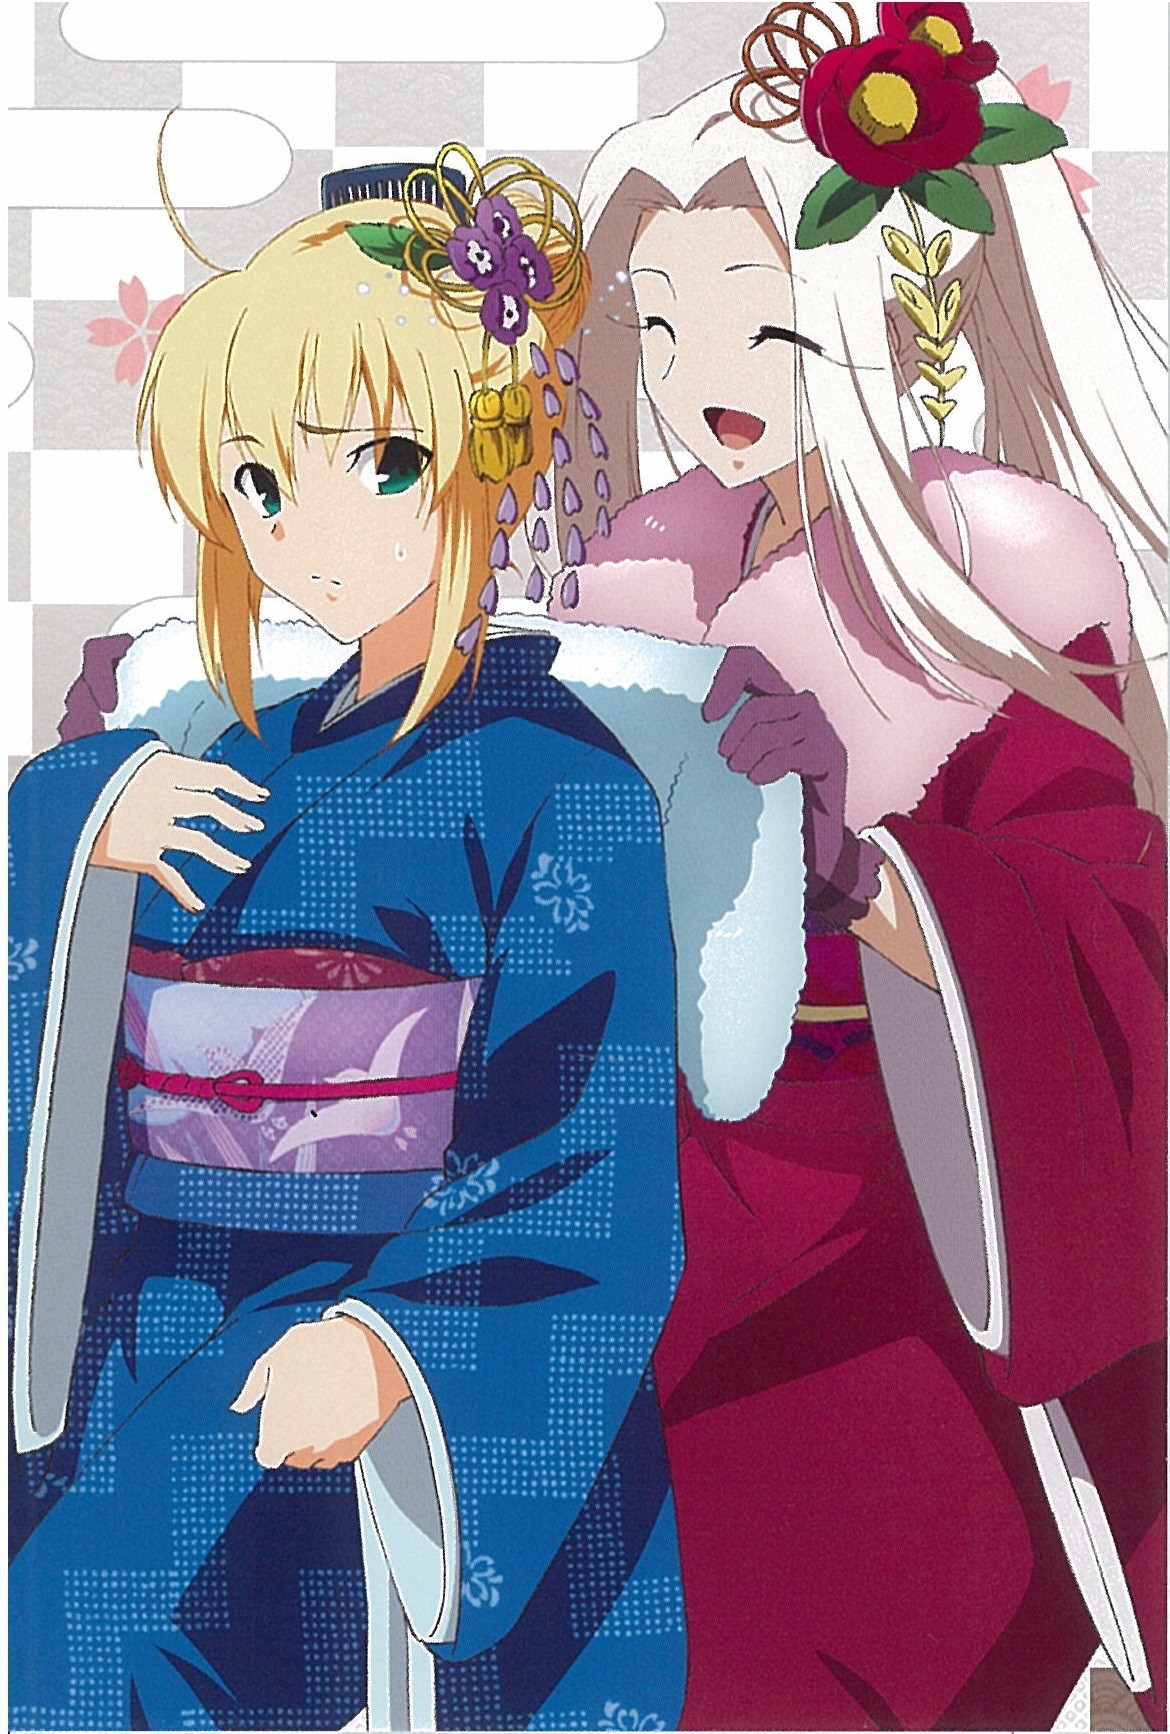 Anime 1170x1734 Fate series Fate/Zero anime girls Irisviel von Einzbern Saber